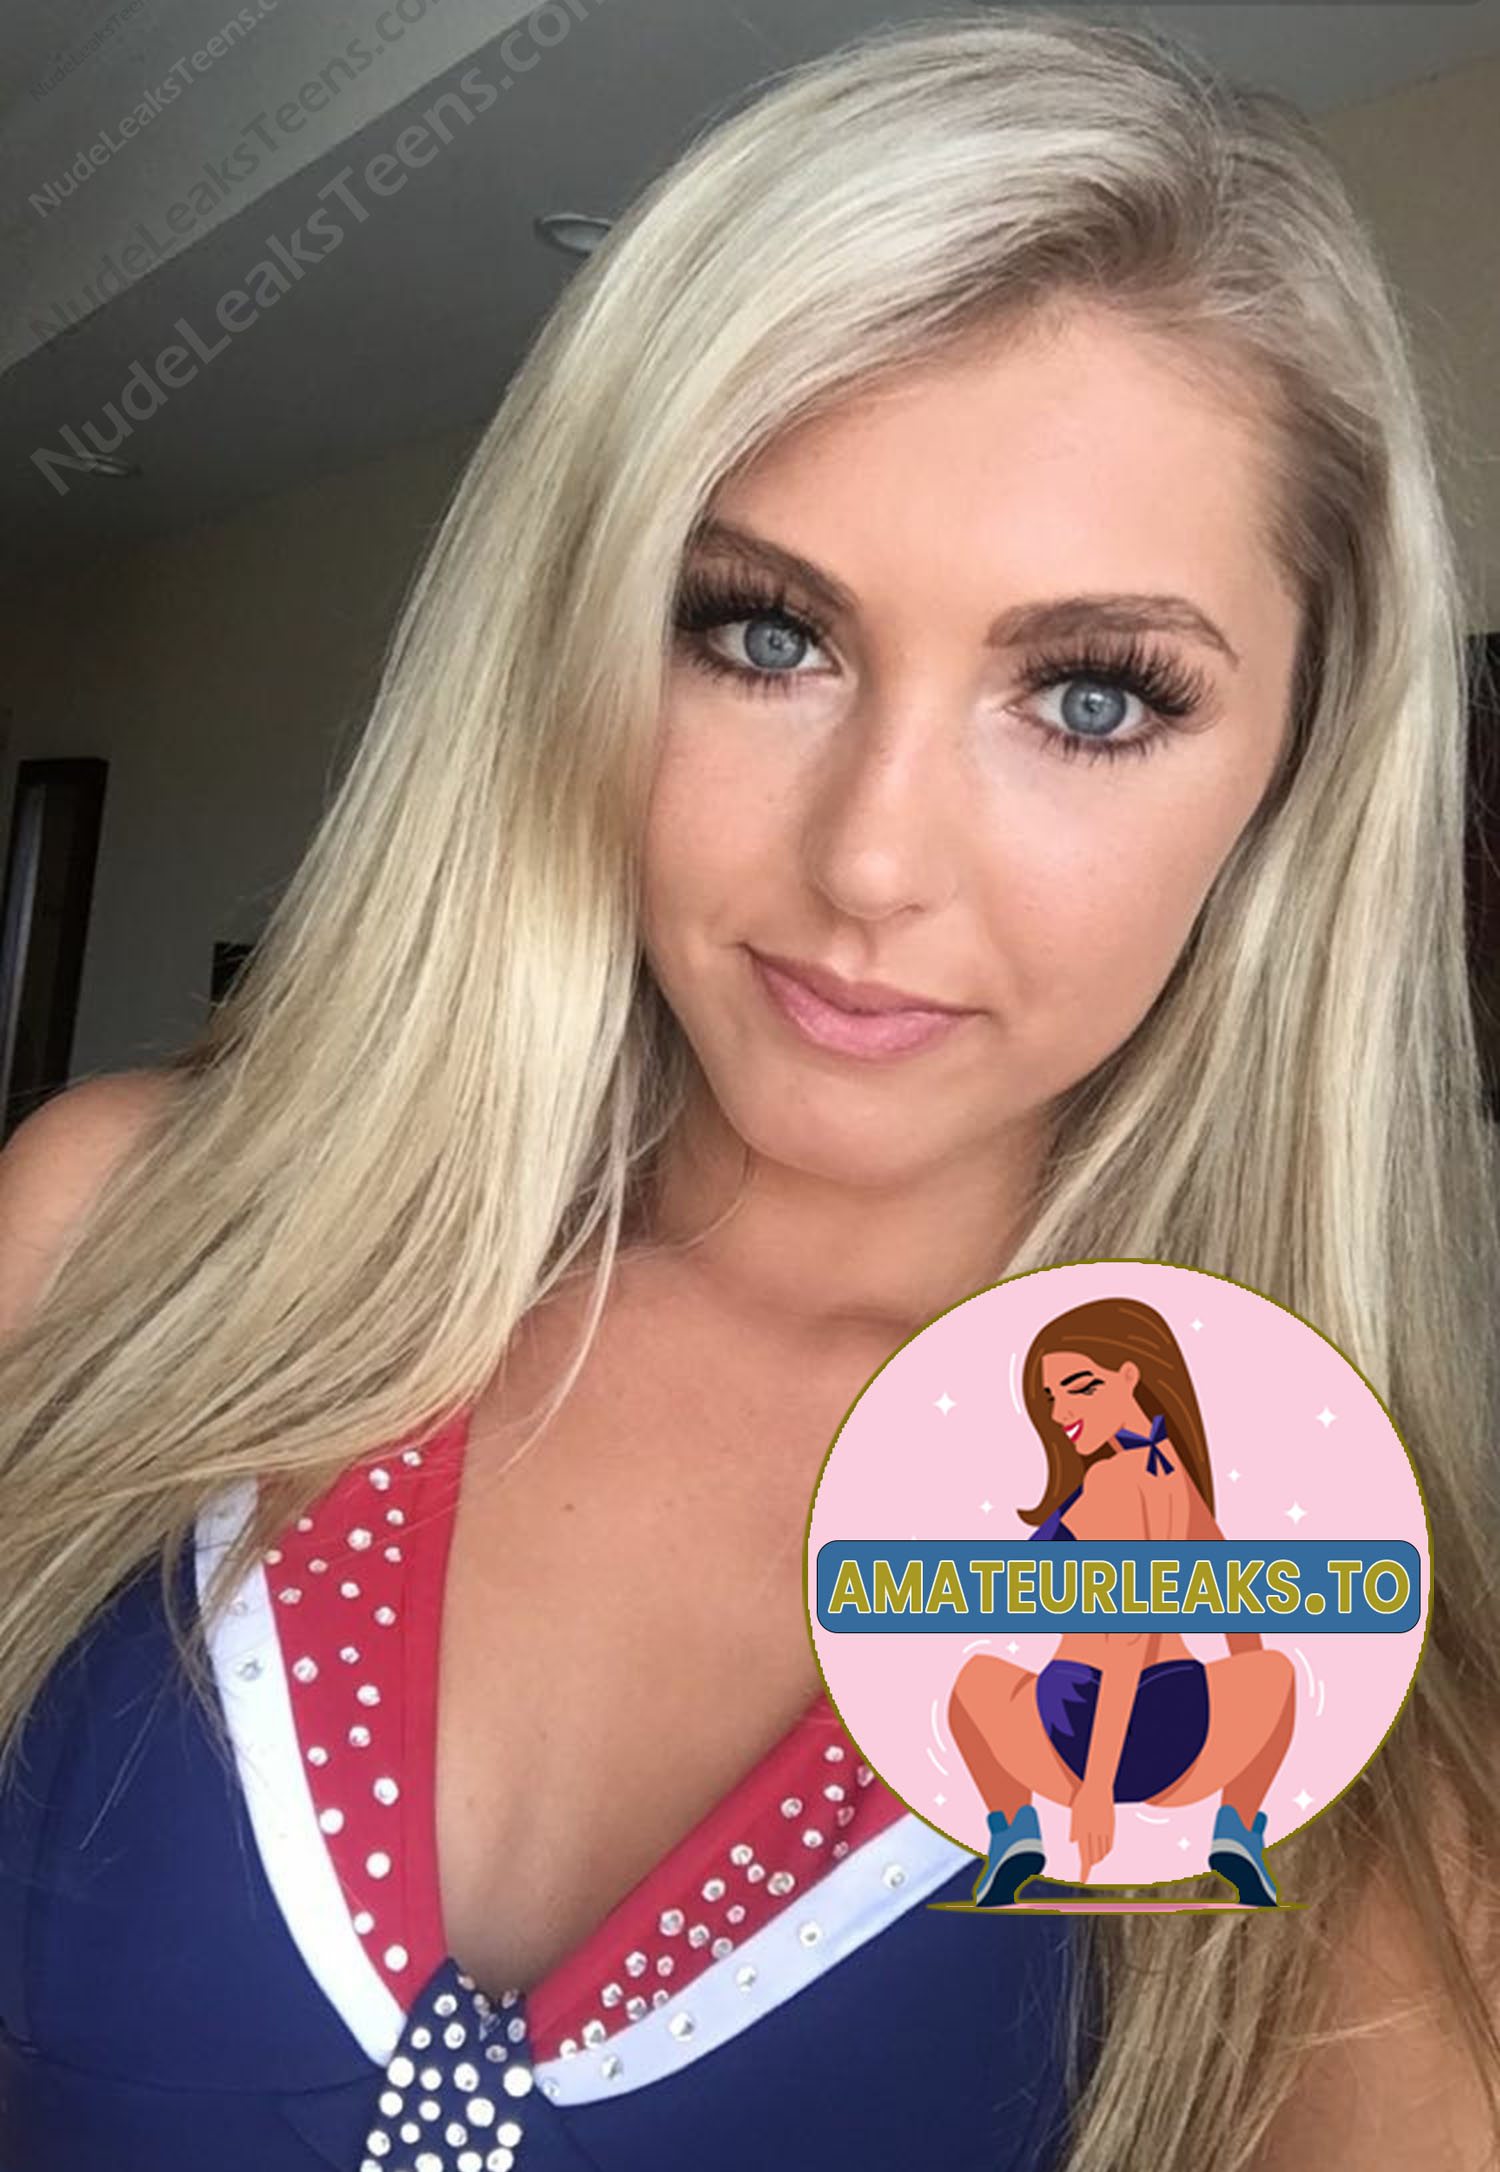 Bailey Medeiros – Pretty Hot Blonde Girl Selfie Nudes Nudeleaksteens Leaks